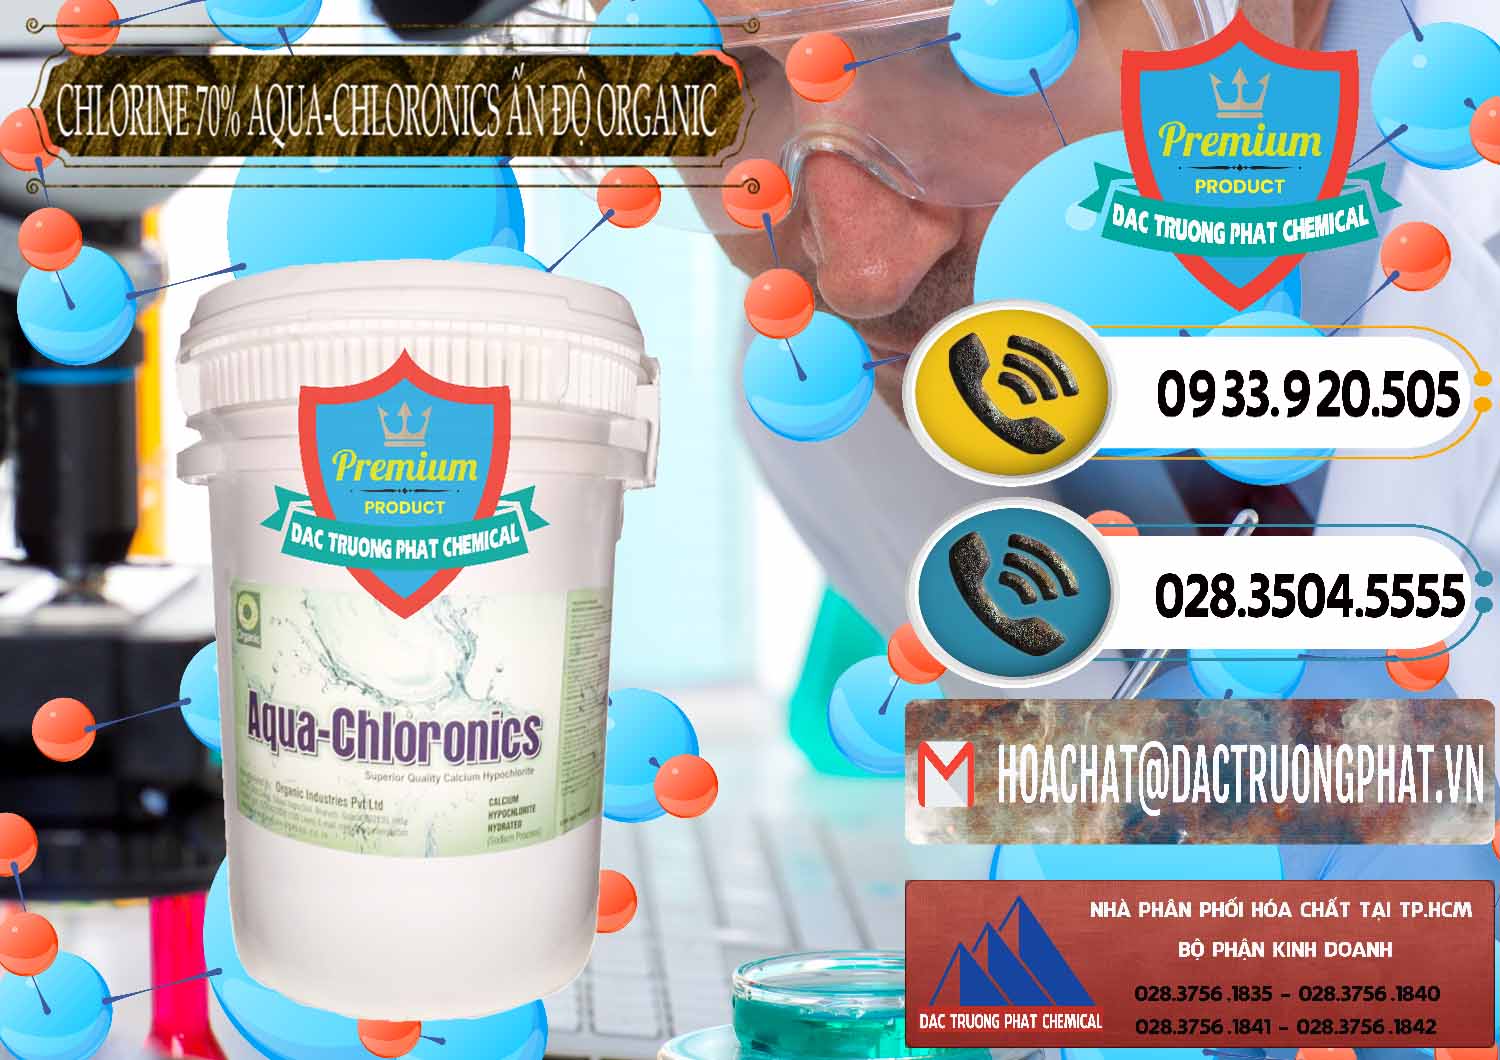 Chuyên bán ( phân phối ) Chlorine – Clorin 70% Aqua-Chloronics Ấn Độ Organic India - 0211 - Cty chuyên cung cấp và nhập khẩu hóa chất tại TP.HCM - hoachatdetnhuom.vn